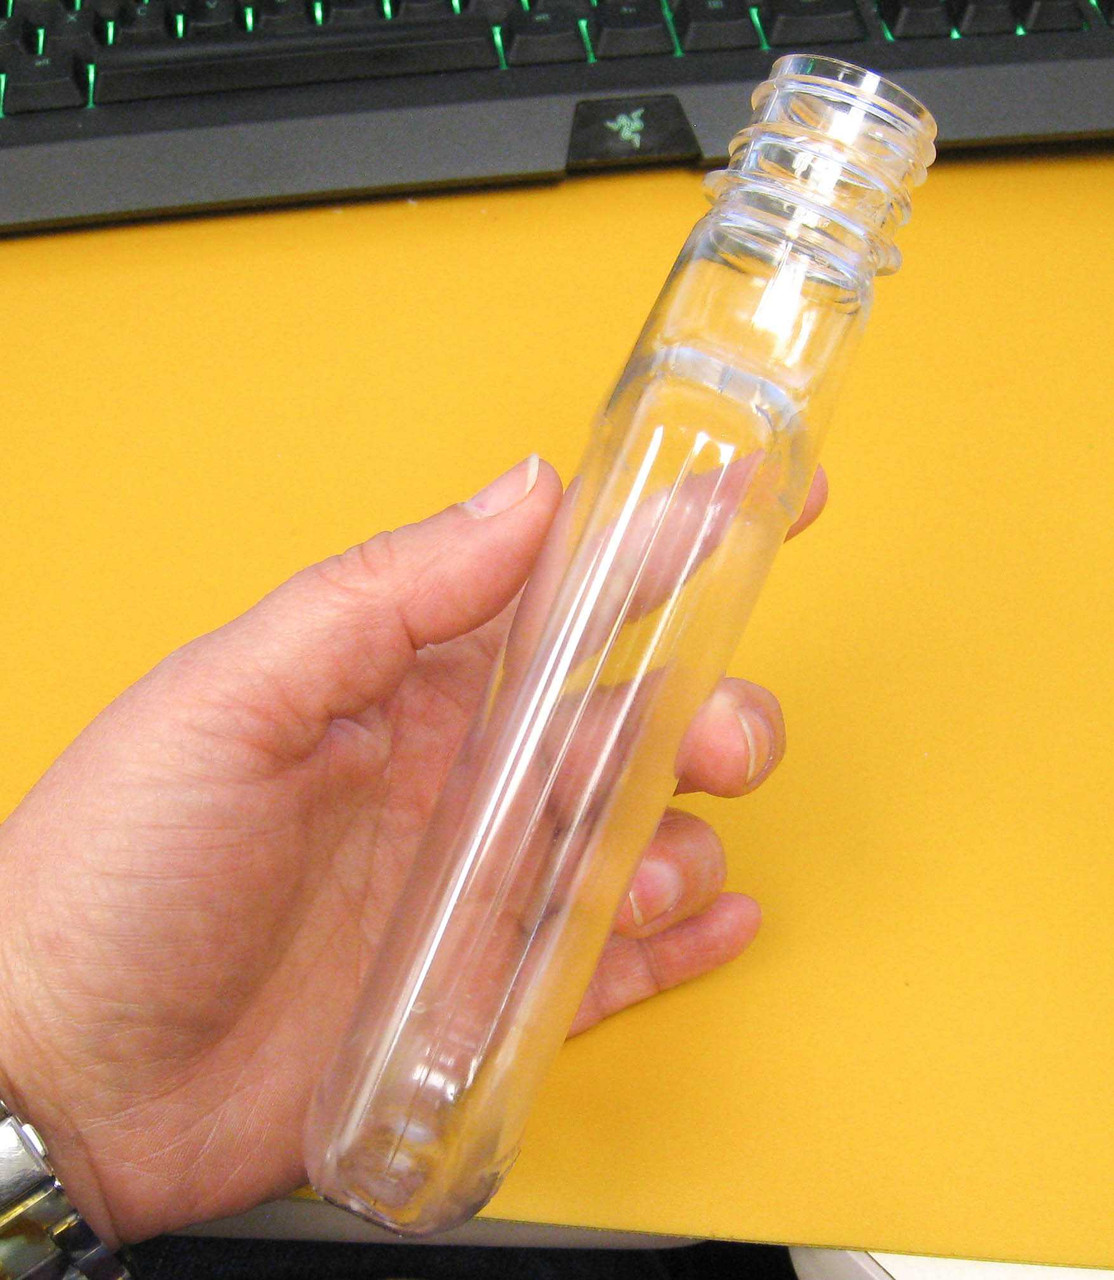 Flask bottle 200 ml - 74463 - Verpackungsglas